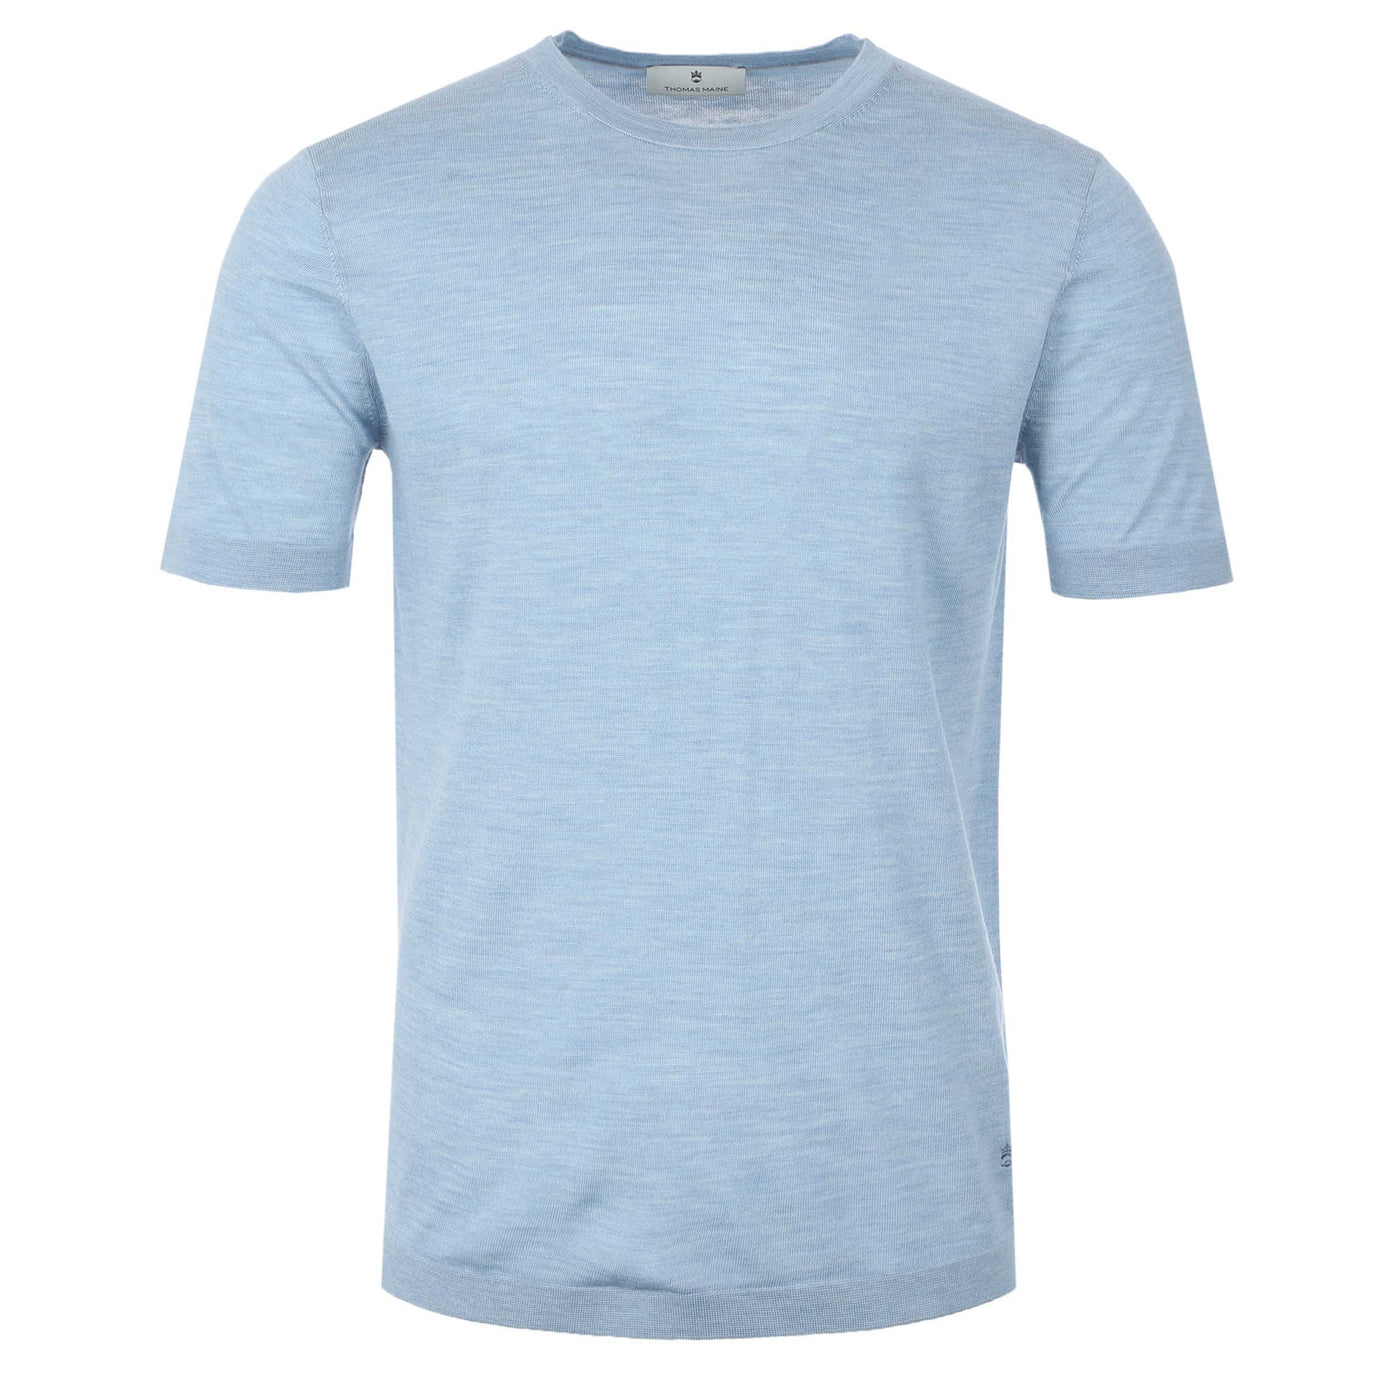 Thomas Maine Merino T-Shirt in Sky Blue